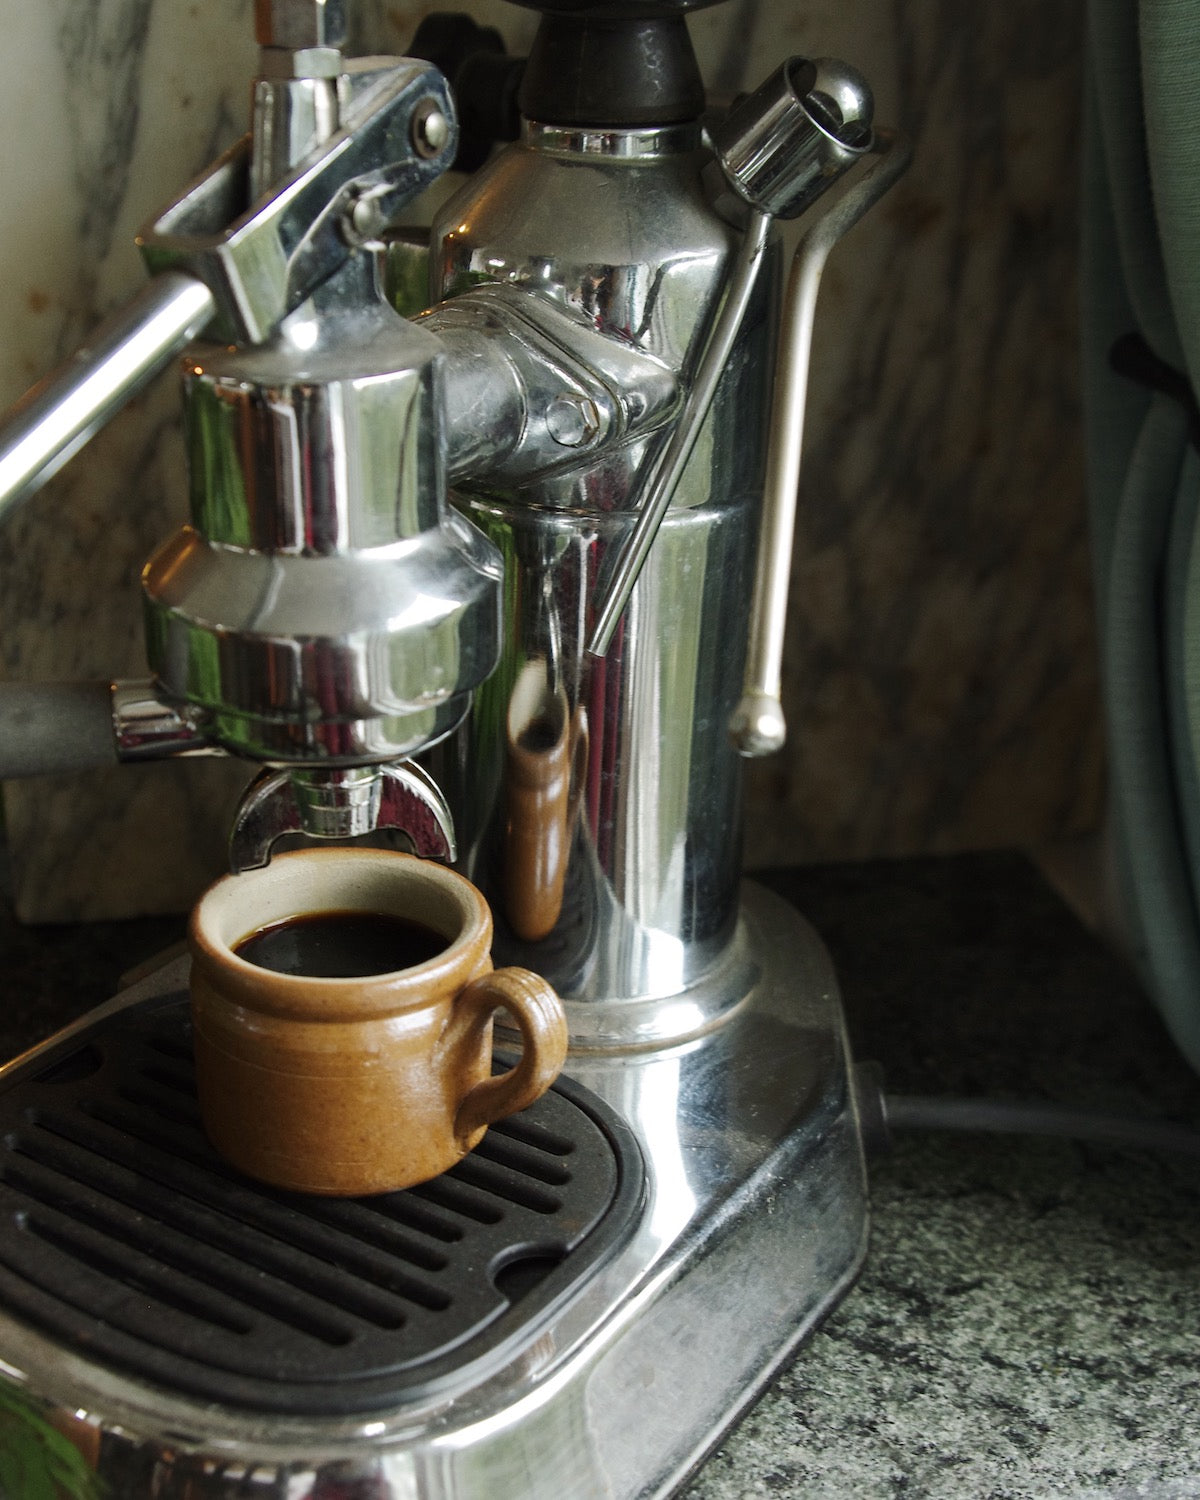 Brown mug in espresso machine.